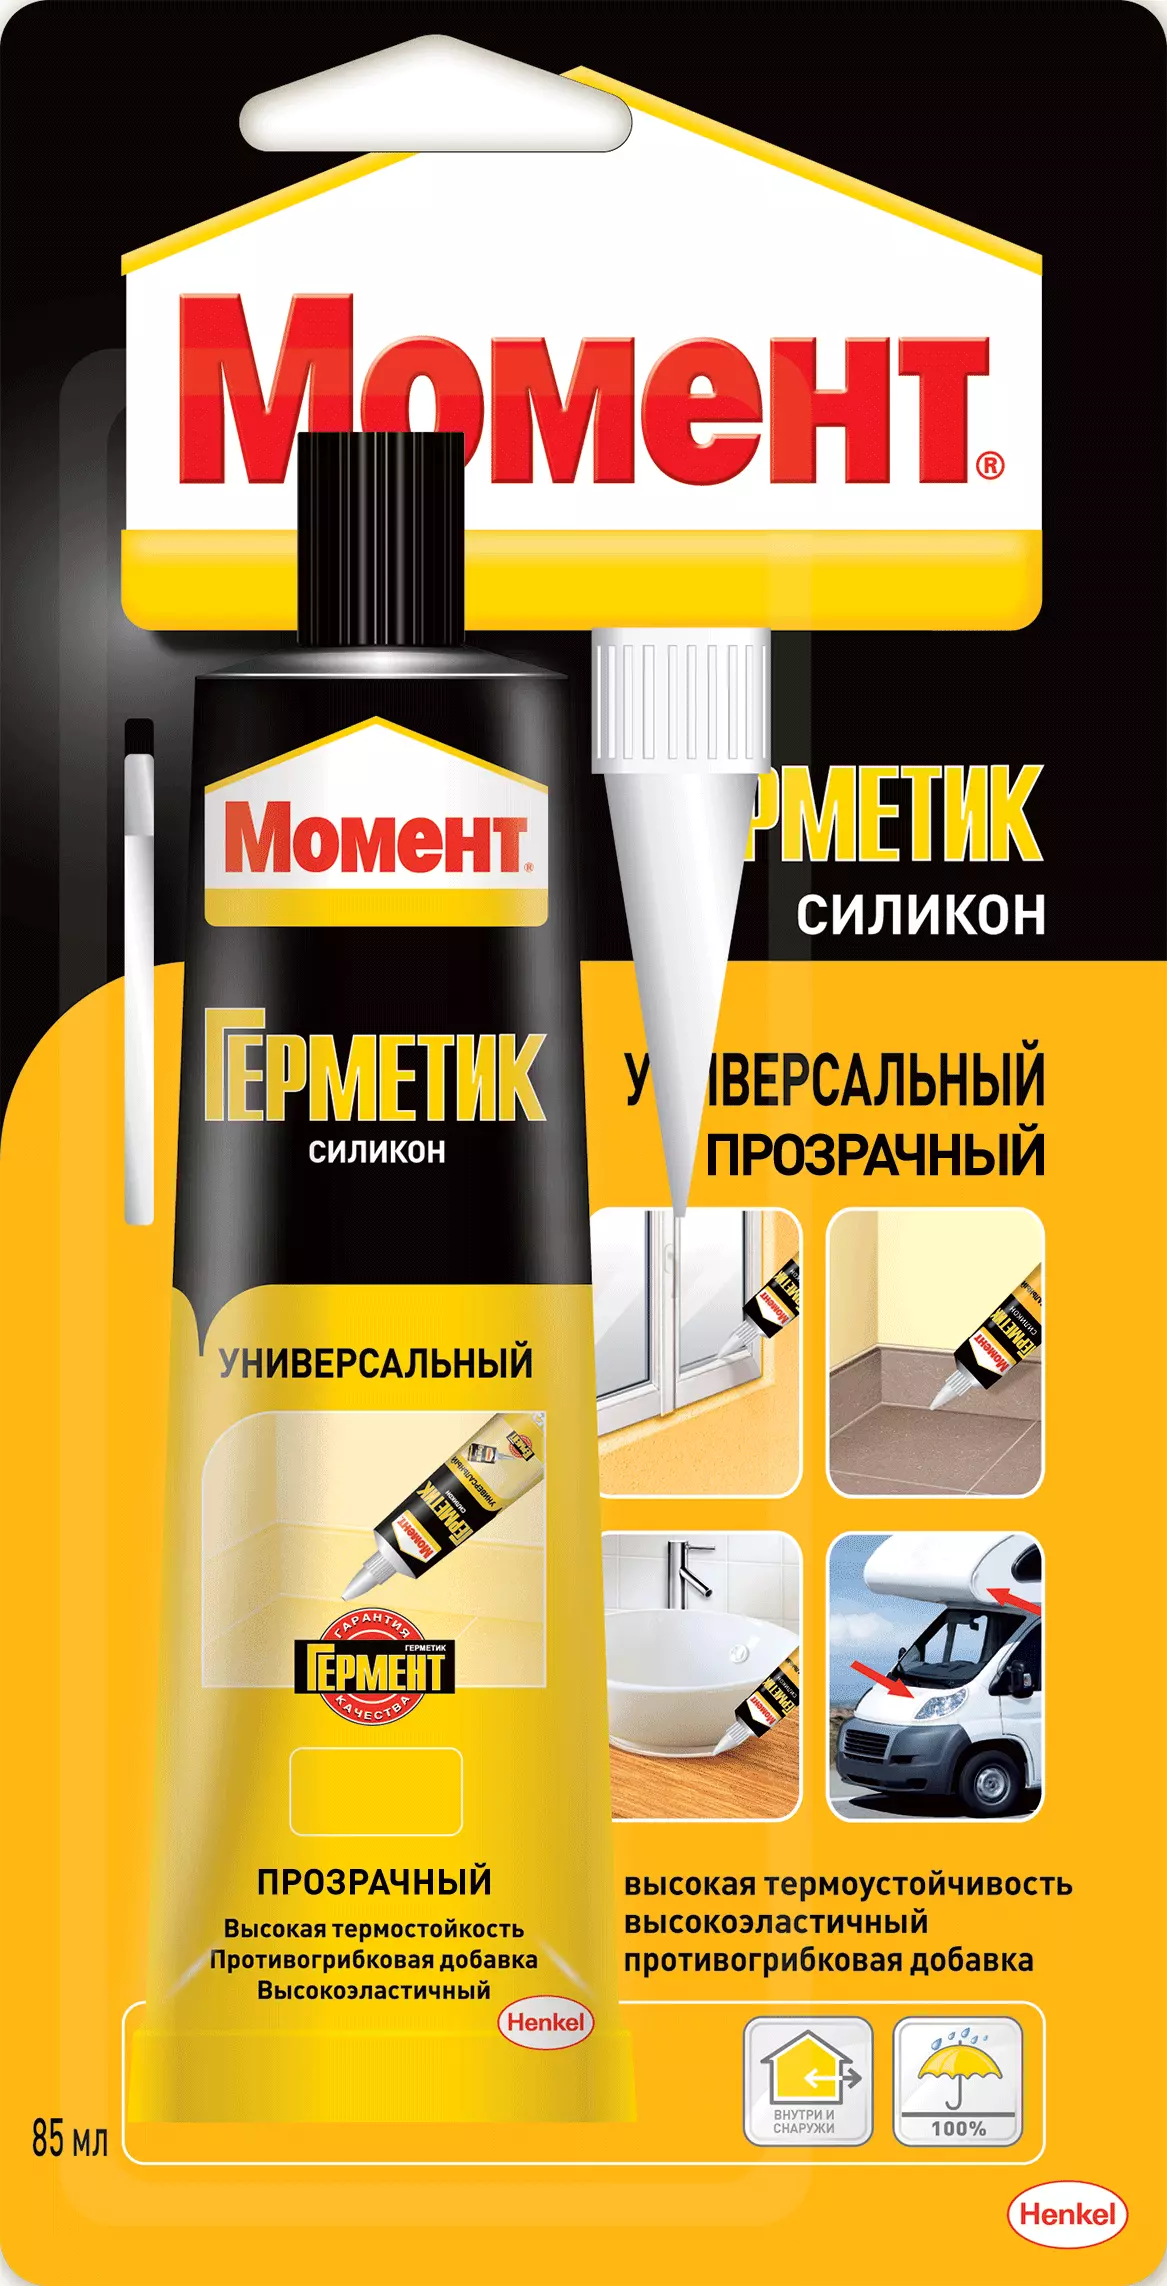 Спрей для фиксации вырубленных прокладок LOCTITE 3020 400 мл купить в  Екатеринбурге на PromPortal.Su (ID#37637854)